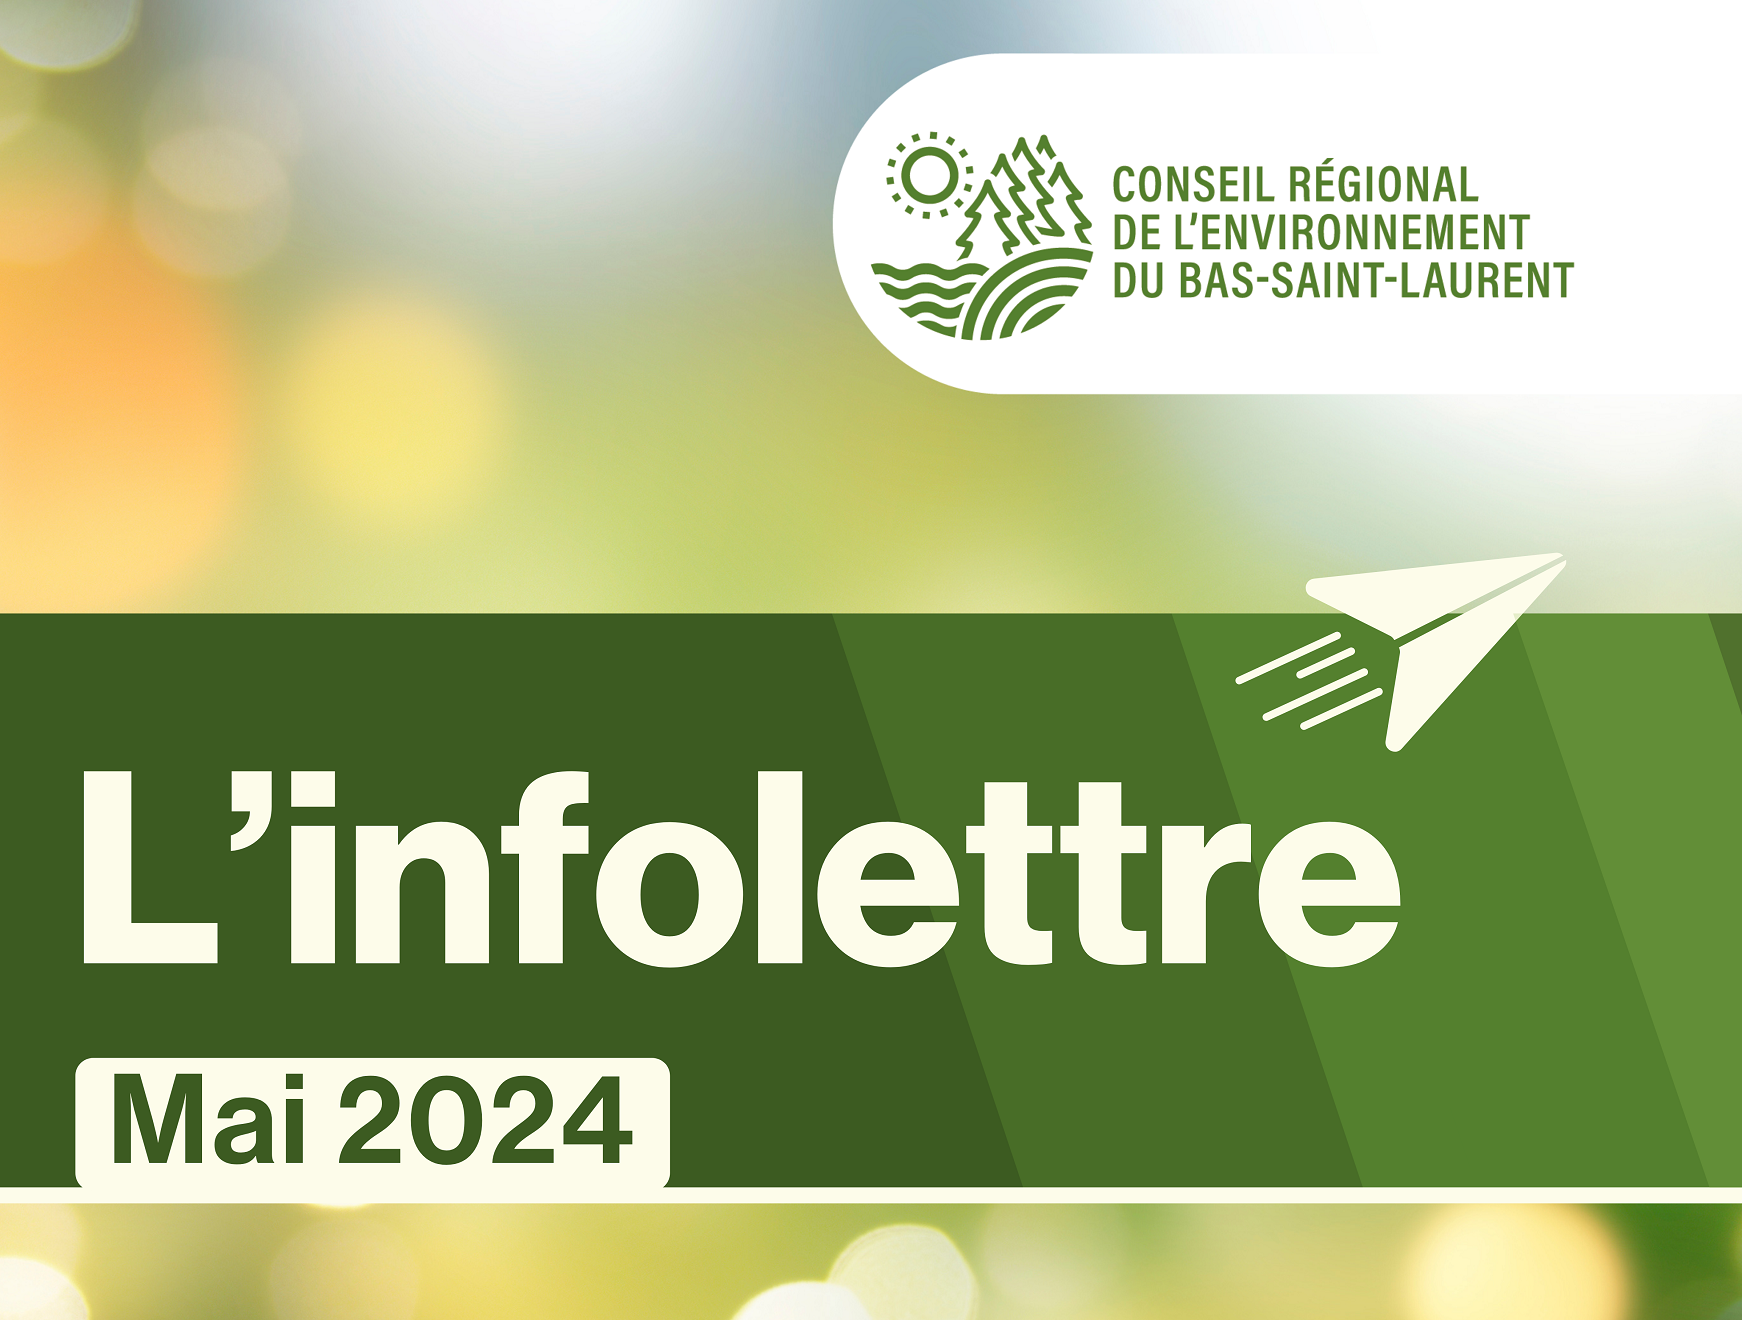 Infolettre de mai du Conseil régional de l’environnement du Bas-Saint-Laurent